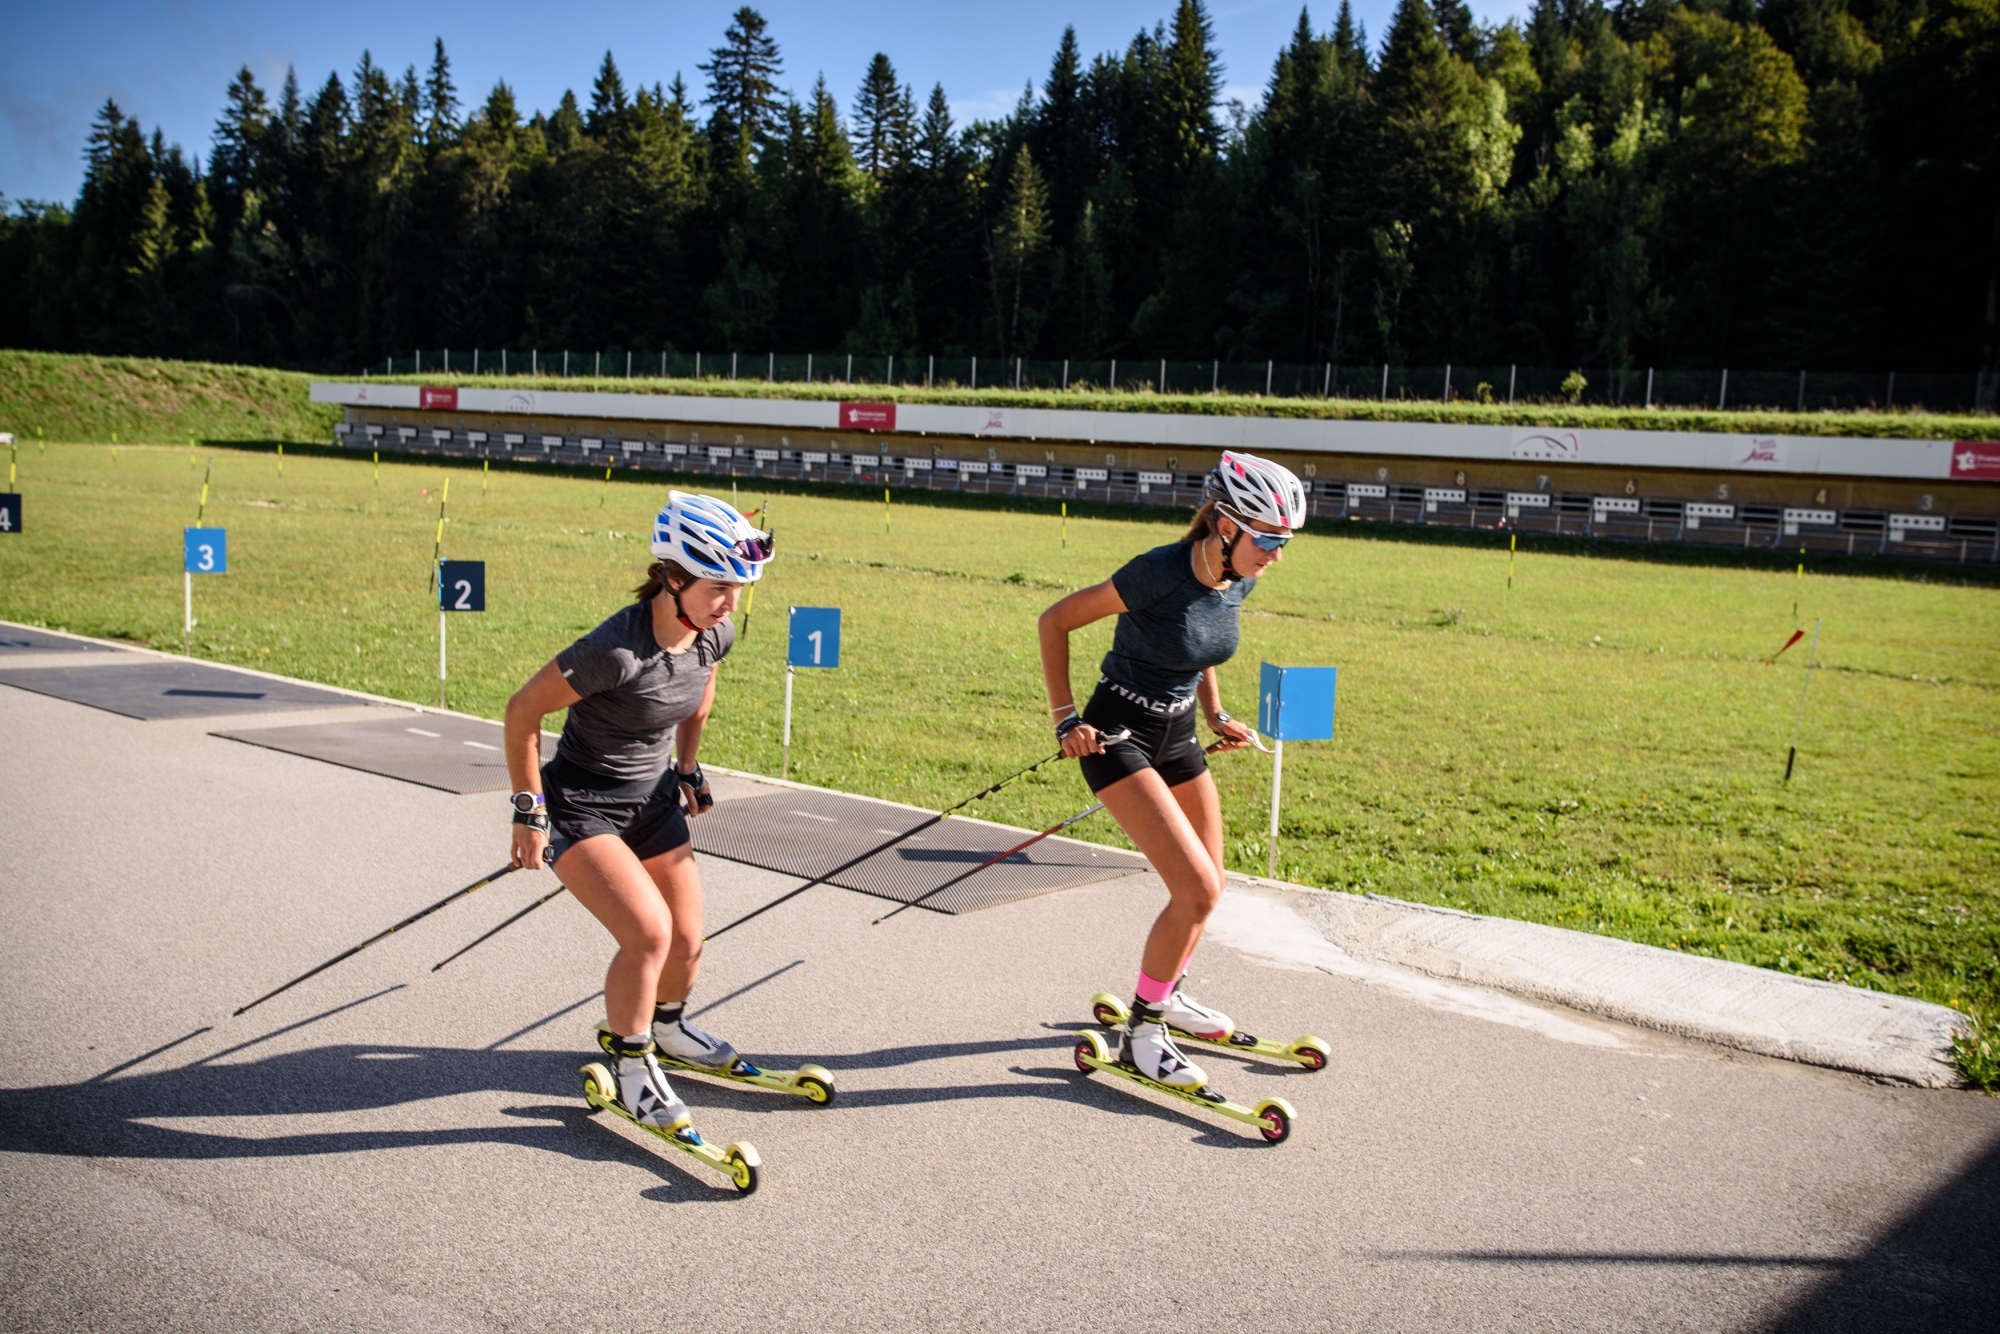 Avec ses pistes en bitume et son pas de tir exigeant, le Stade de ski nordique des Tuffes est surtout utile durant l'été pour la préparation des futurs champions du biathlon, du ski de fond ou du saut à ski français. 